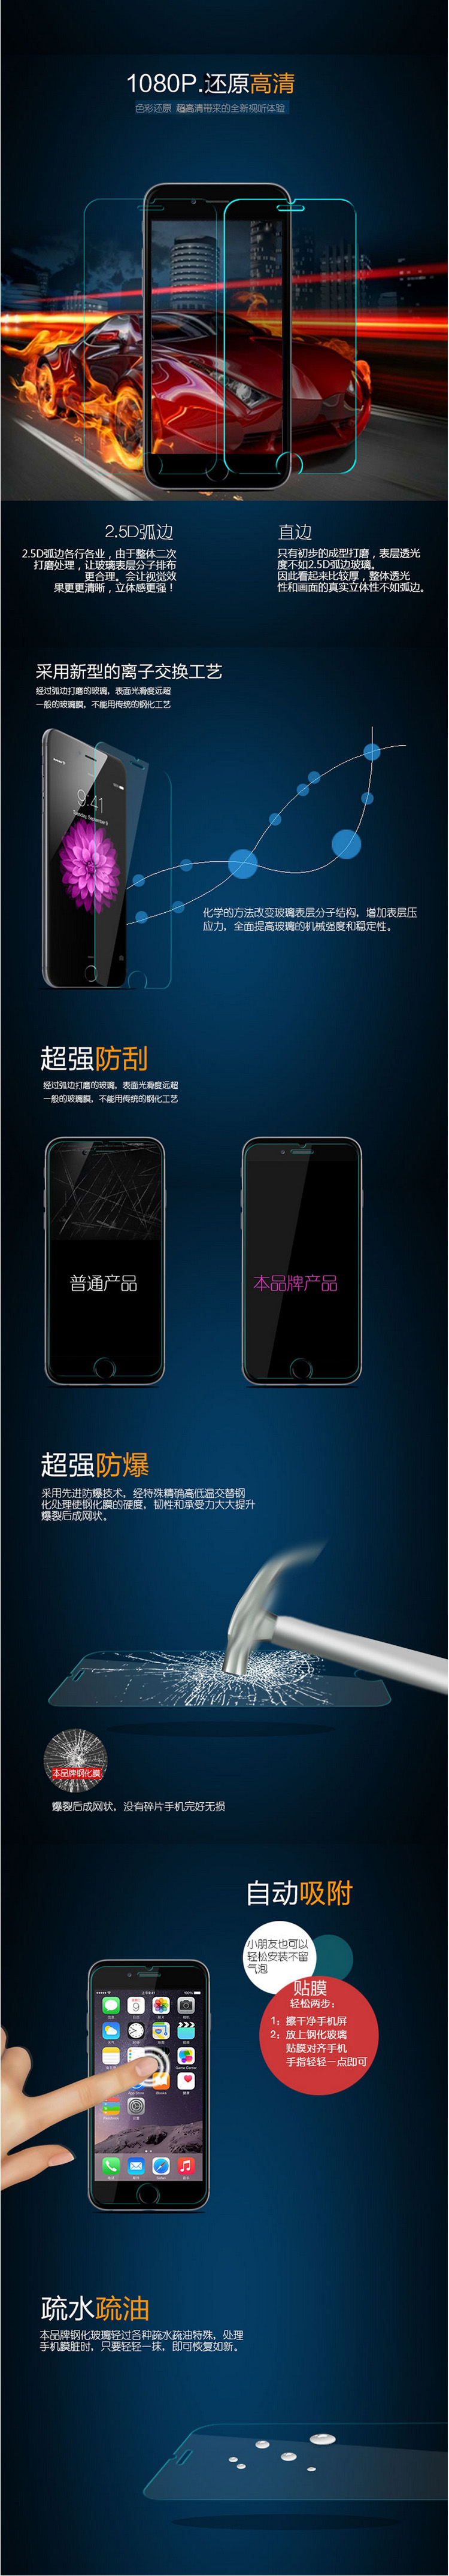 苹果 iPhone6/6s/6puls/6splus 钢化膜防爆钢化玻璃膜高清手机贴膜5.5英寸